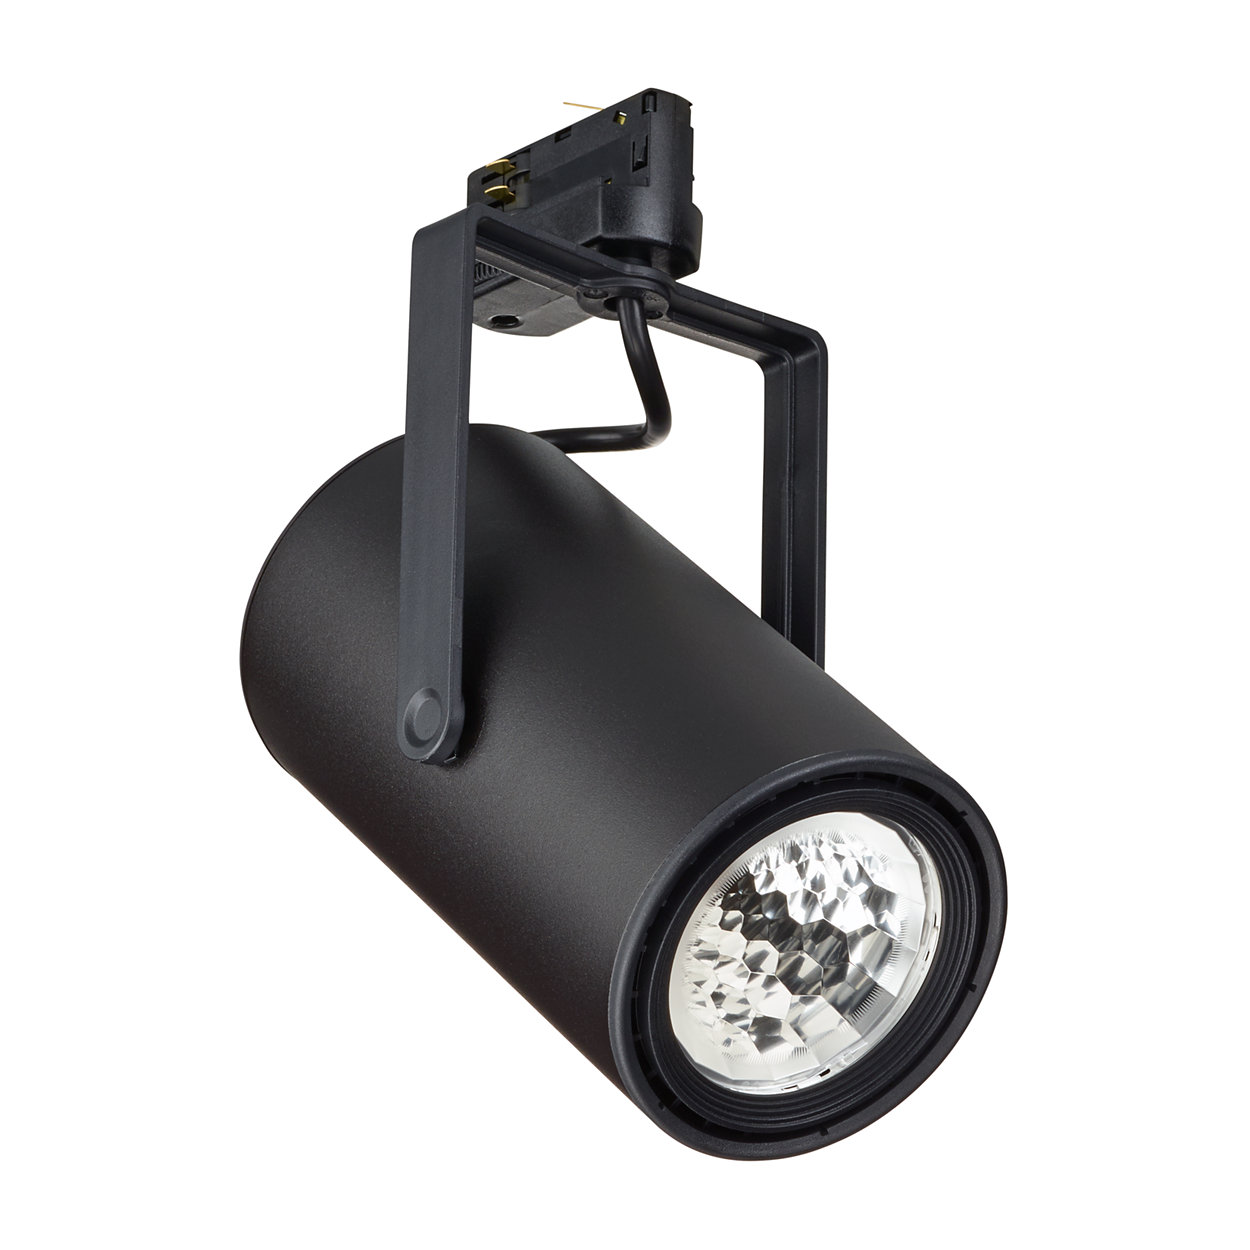 Rugalmas és megfizethető kiskereskedelmi lámpatest készlet